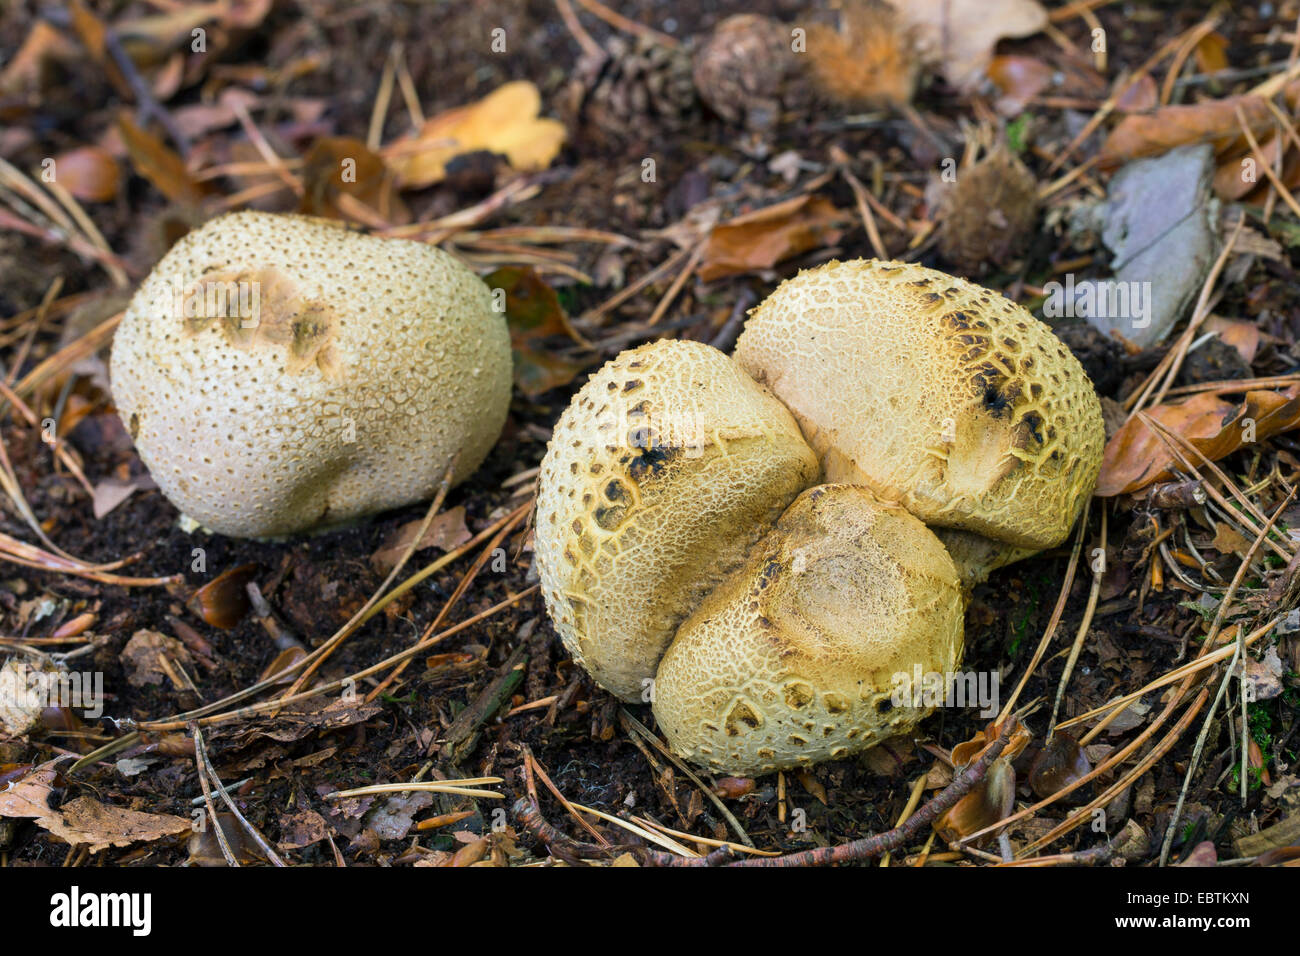 gemeinsame Earthball (Sklerodermie Citrinum) Fruchtkörper Körpern auf Wald, Boden, giftige Pilze, Deutschland Stockfoto